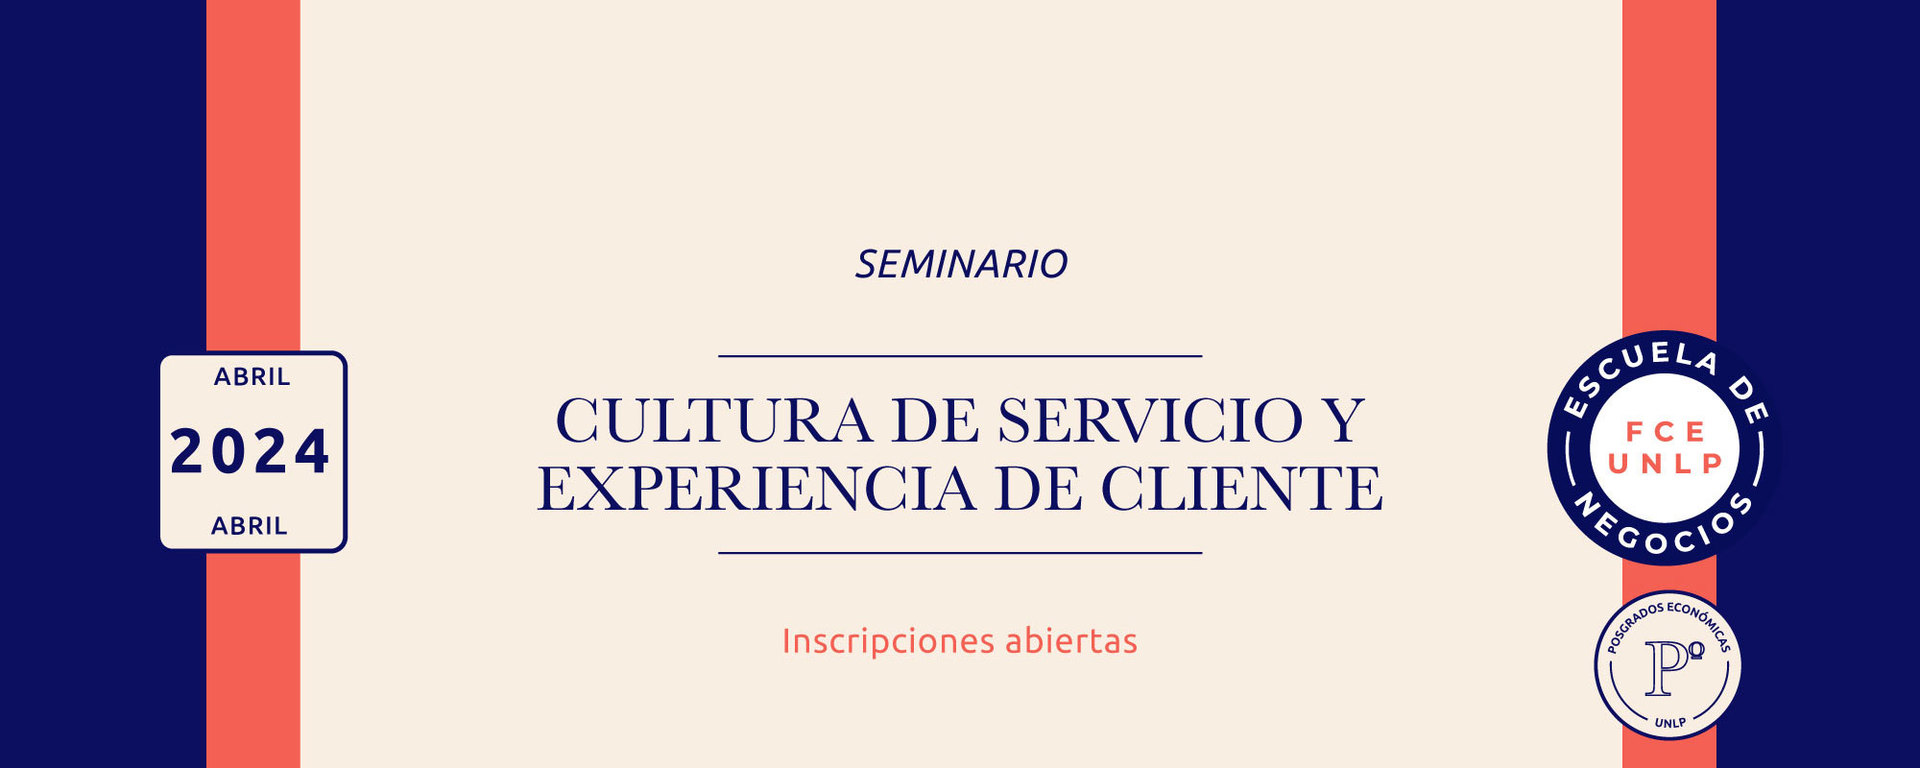 Seminario: Cultura de Servicio y Experiencia de Cliente